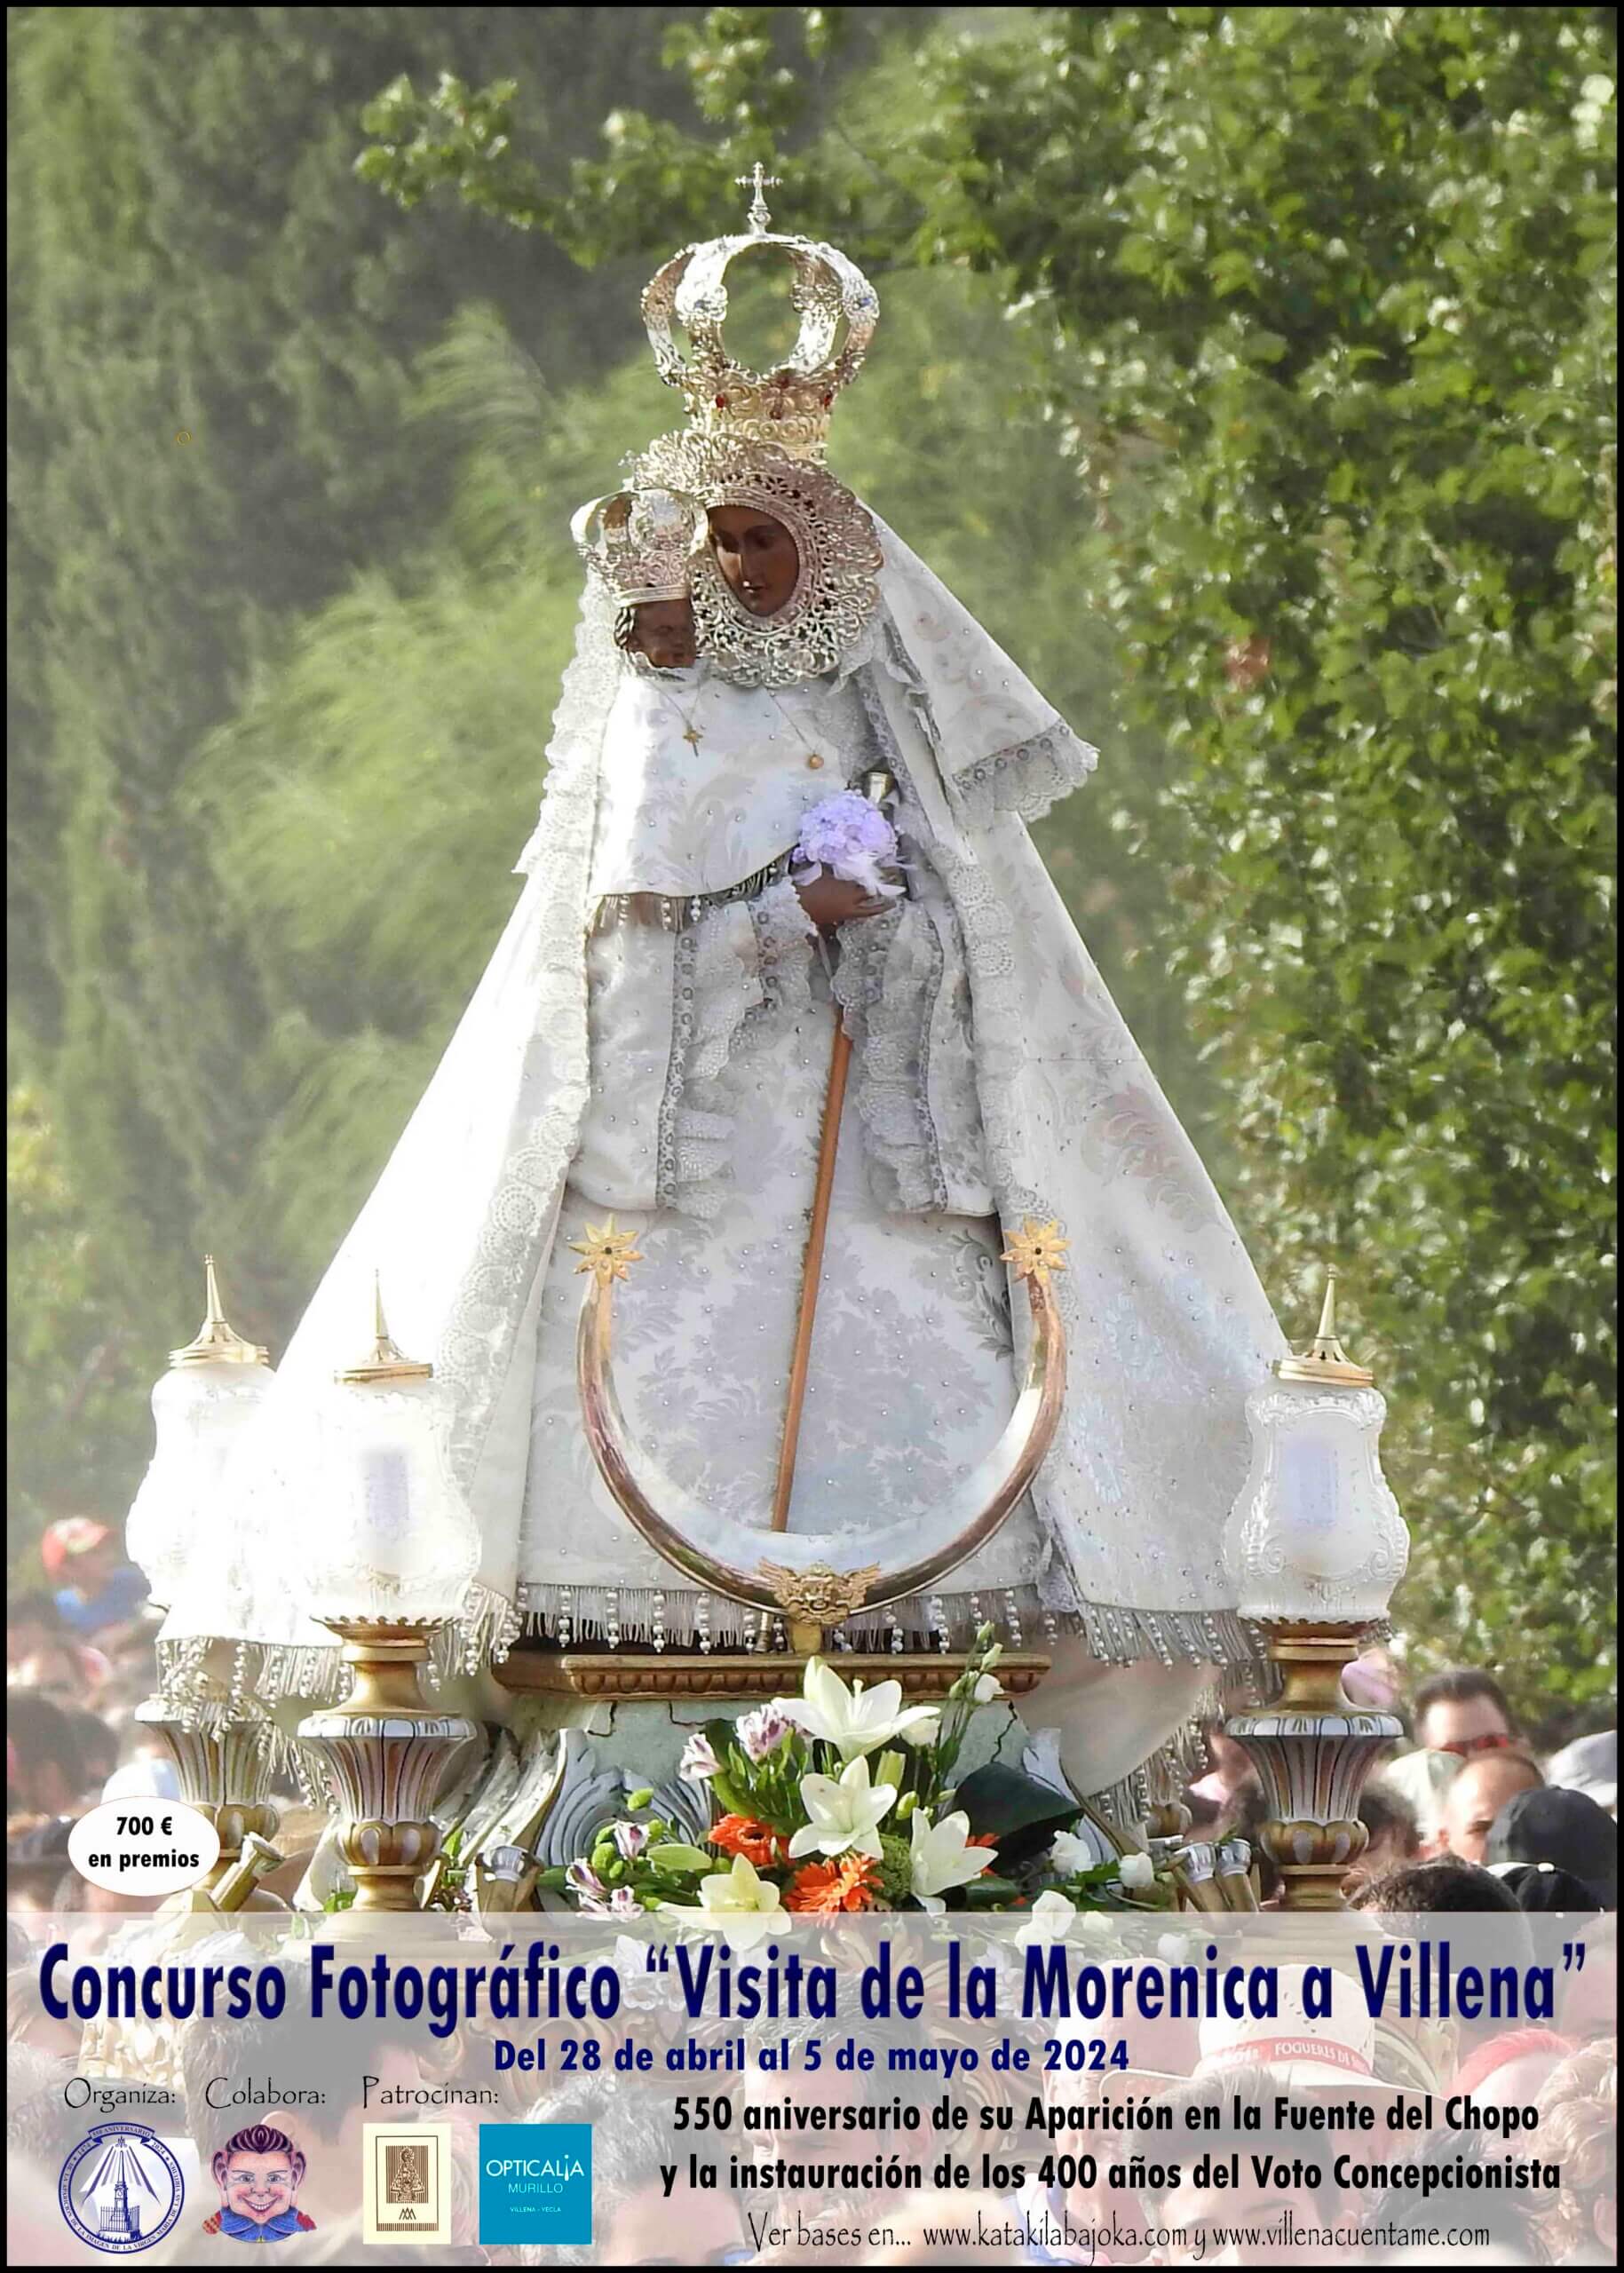 La Junta de la Virgen convoca un concurso fotográfico con motivo de la visita extraordinaria de La Morenica